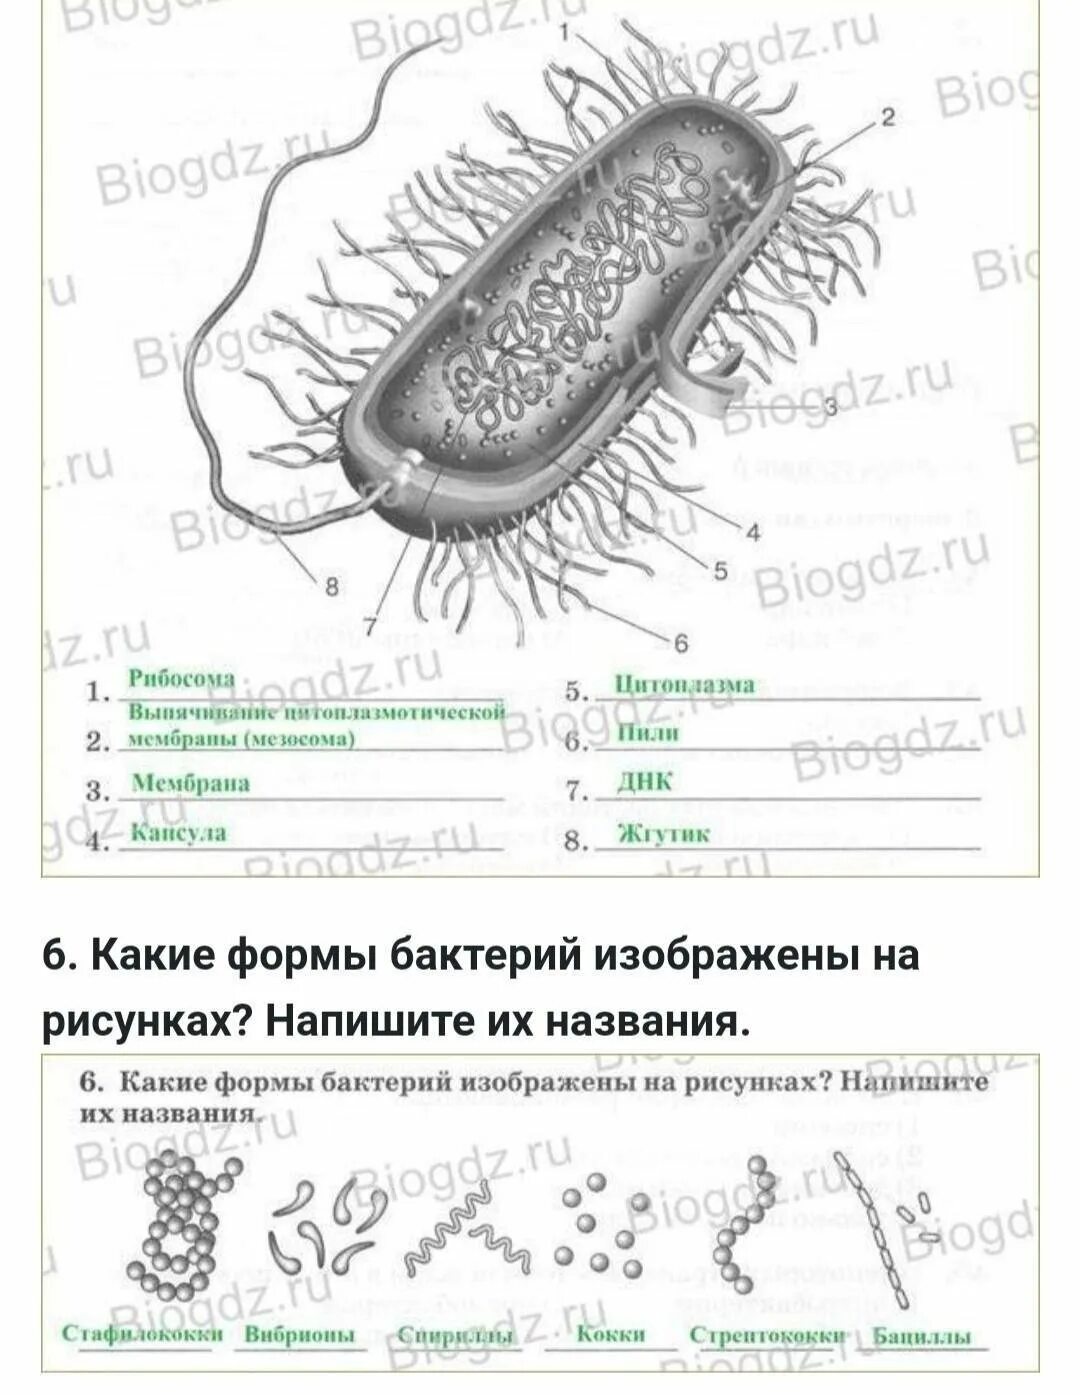 Эубактерии строение бактериальной клетки. Строение покариотической 7клетки. Строение бактериальной клетки 7 класс биология. Схема строения бактериальной клетки биология 7 класс.